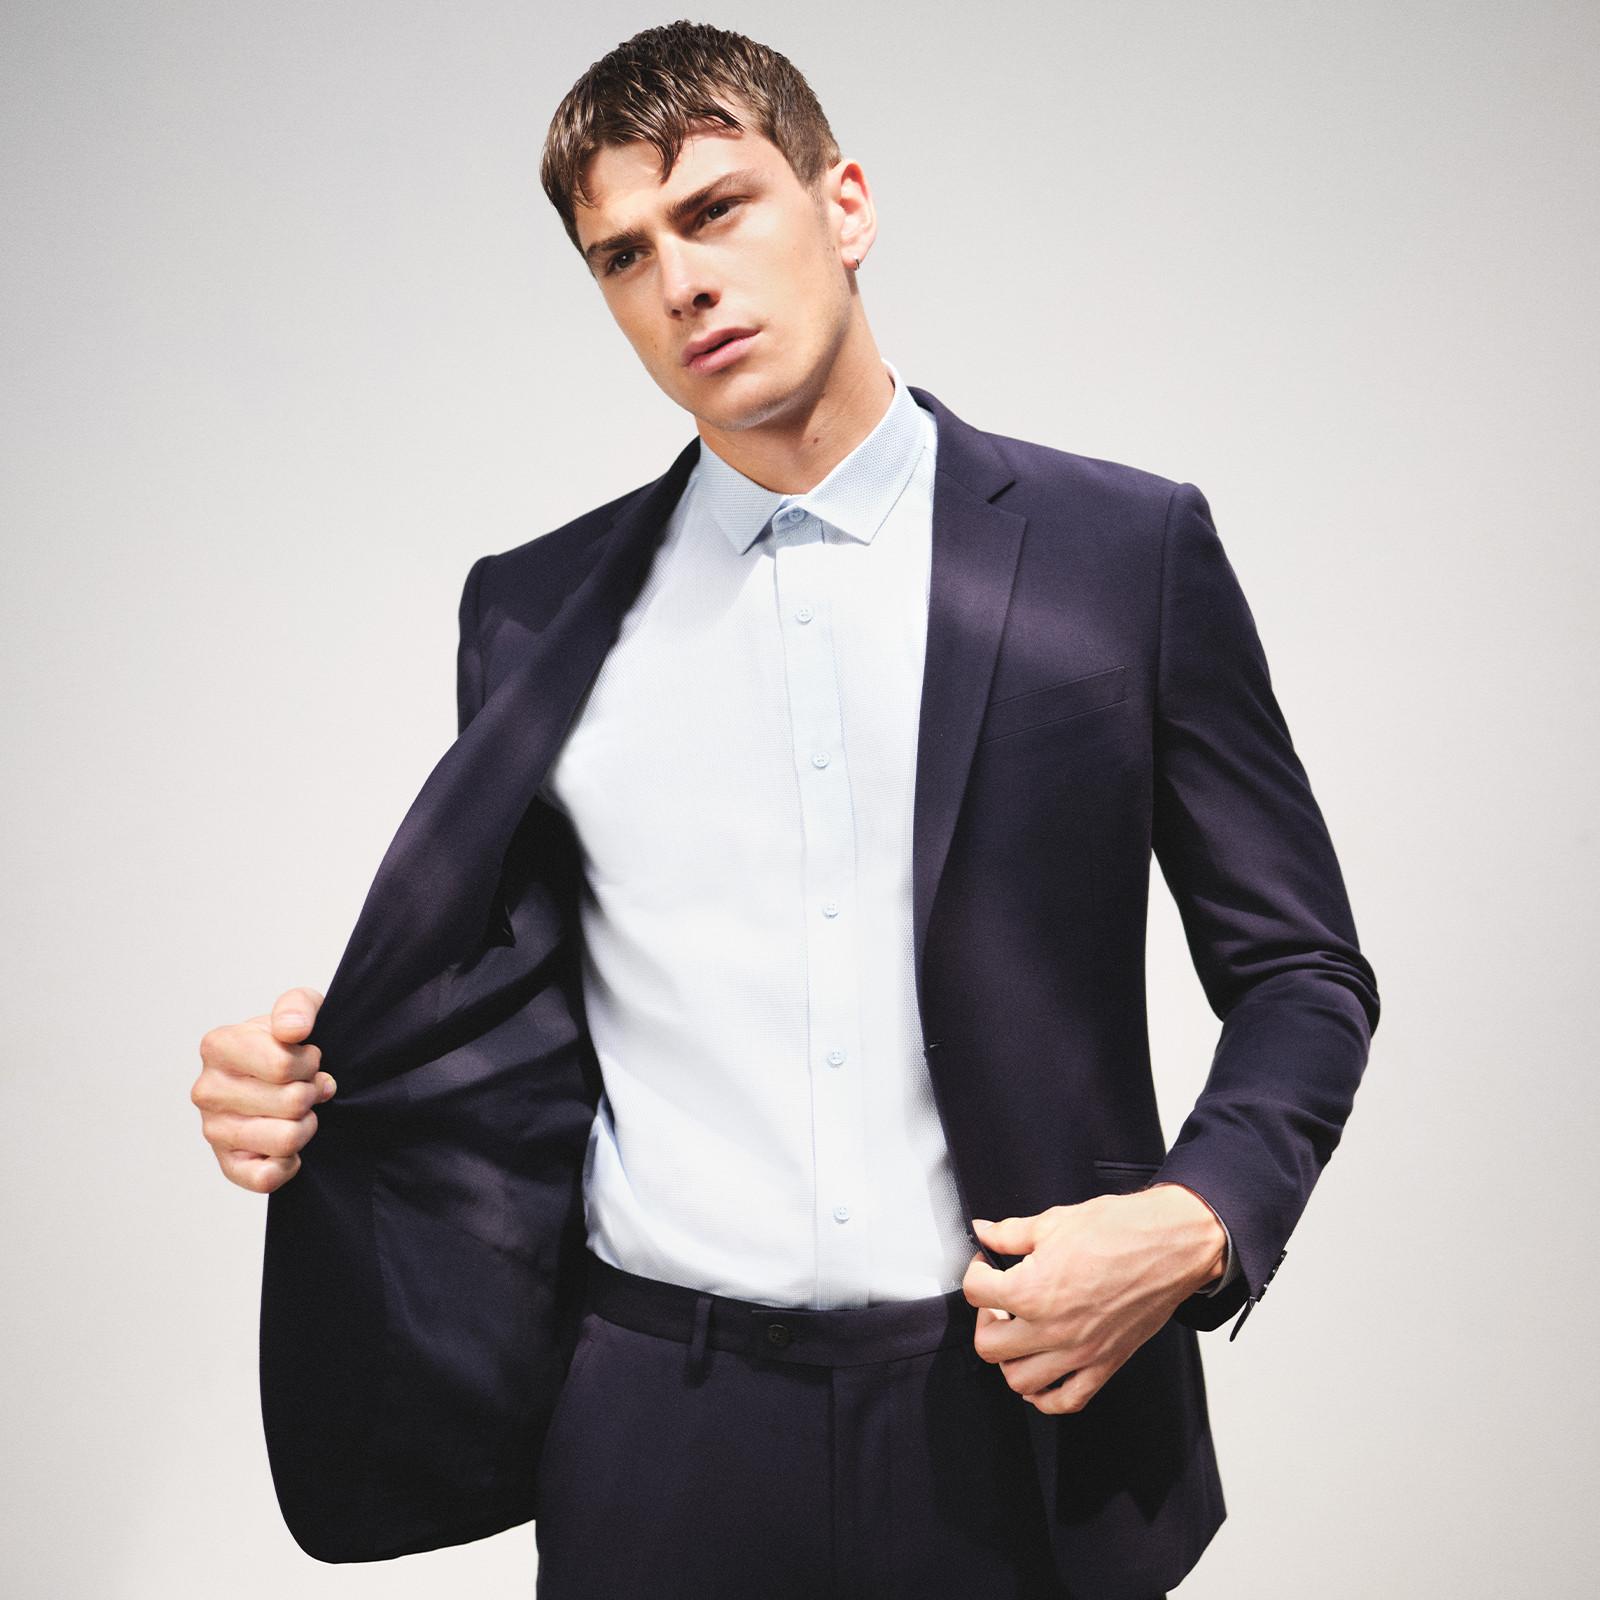 Prendas formales masculinas trajes, ropa de noche | Primark